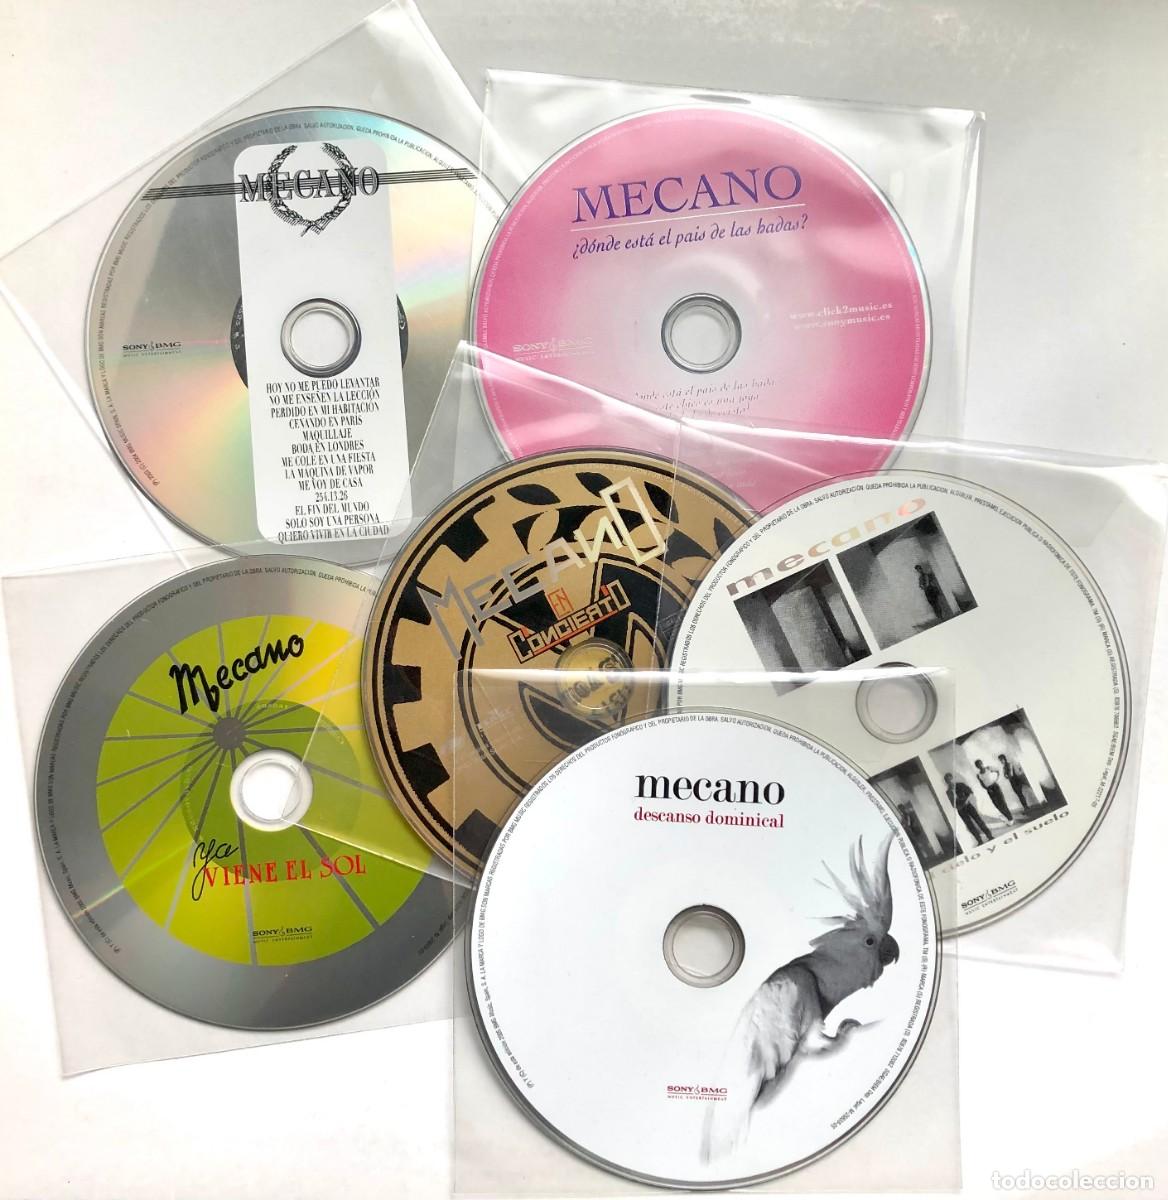 mecano colección 6 cd - Acquista CD di musica pop su todocoleccion